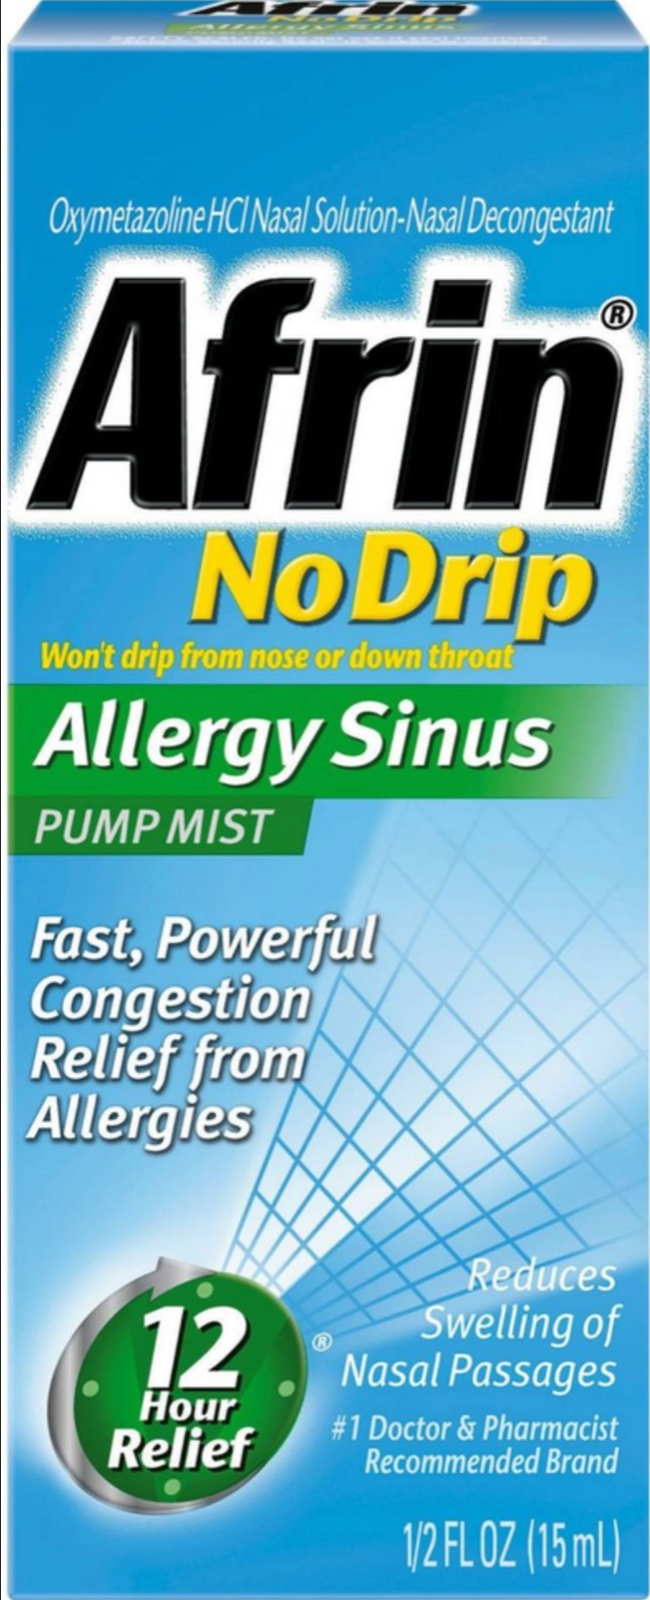 Afrin No Drip Nasal Spray Allergy Sinus 12 Hour Pump Mist 15 mL 12 Hr Relief NEW